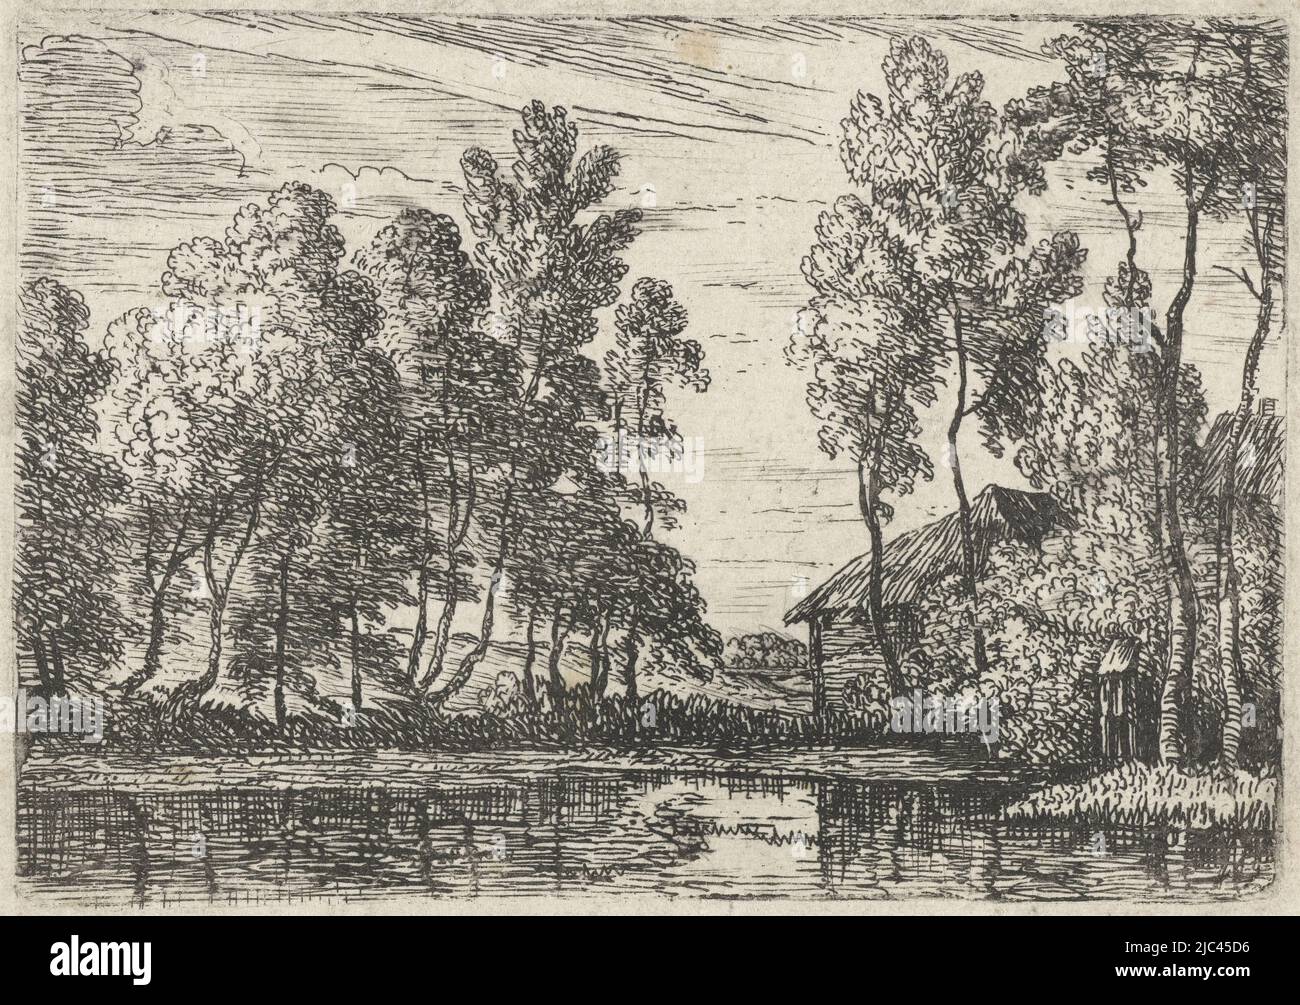 Une maison et une rangée d'arbres le long d'un canal, Canal petits paysages (titre de la série), imprimeur: Lodewijk de Vadder, Lodewijk de Vadder, pays bas, 1615 - 1655, papier, gravure, gravure, h 71 mm × l 102 mm Banque D'Images